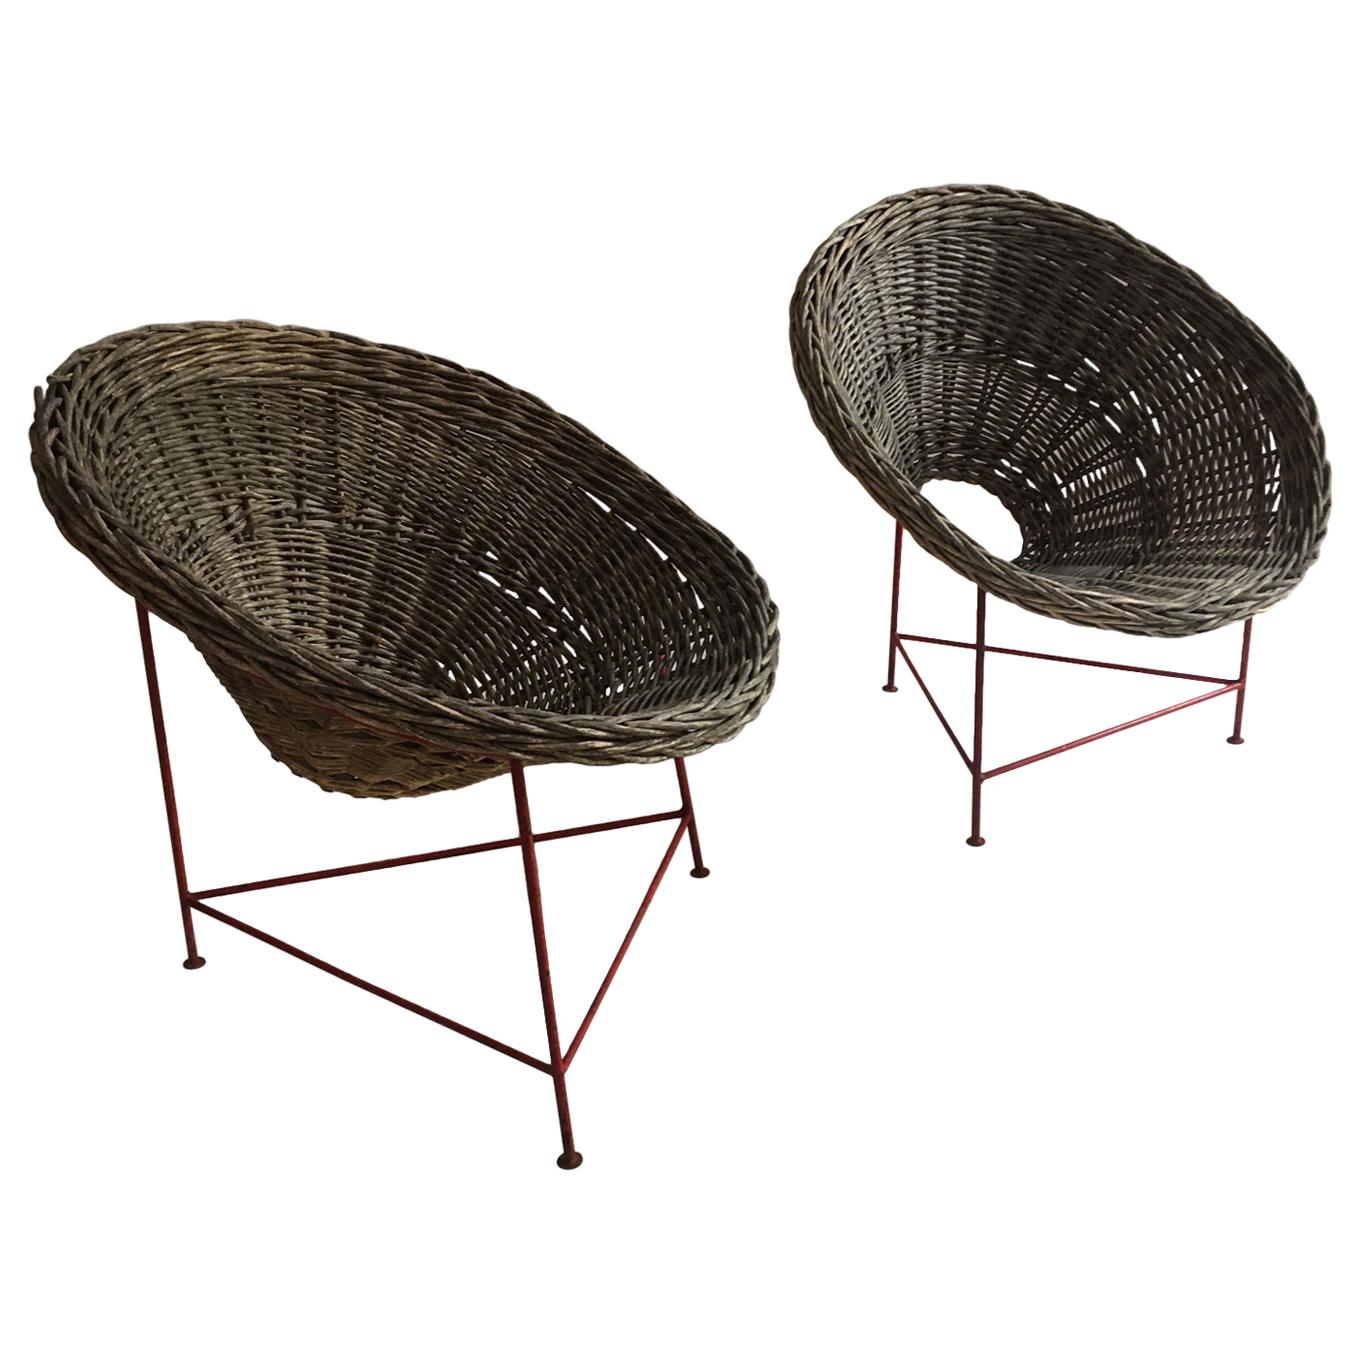 Mid-Century Modern Wicker Basket Chairs Tripod Legs, France, 1950s